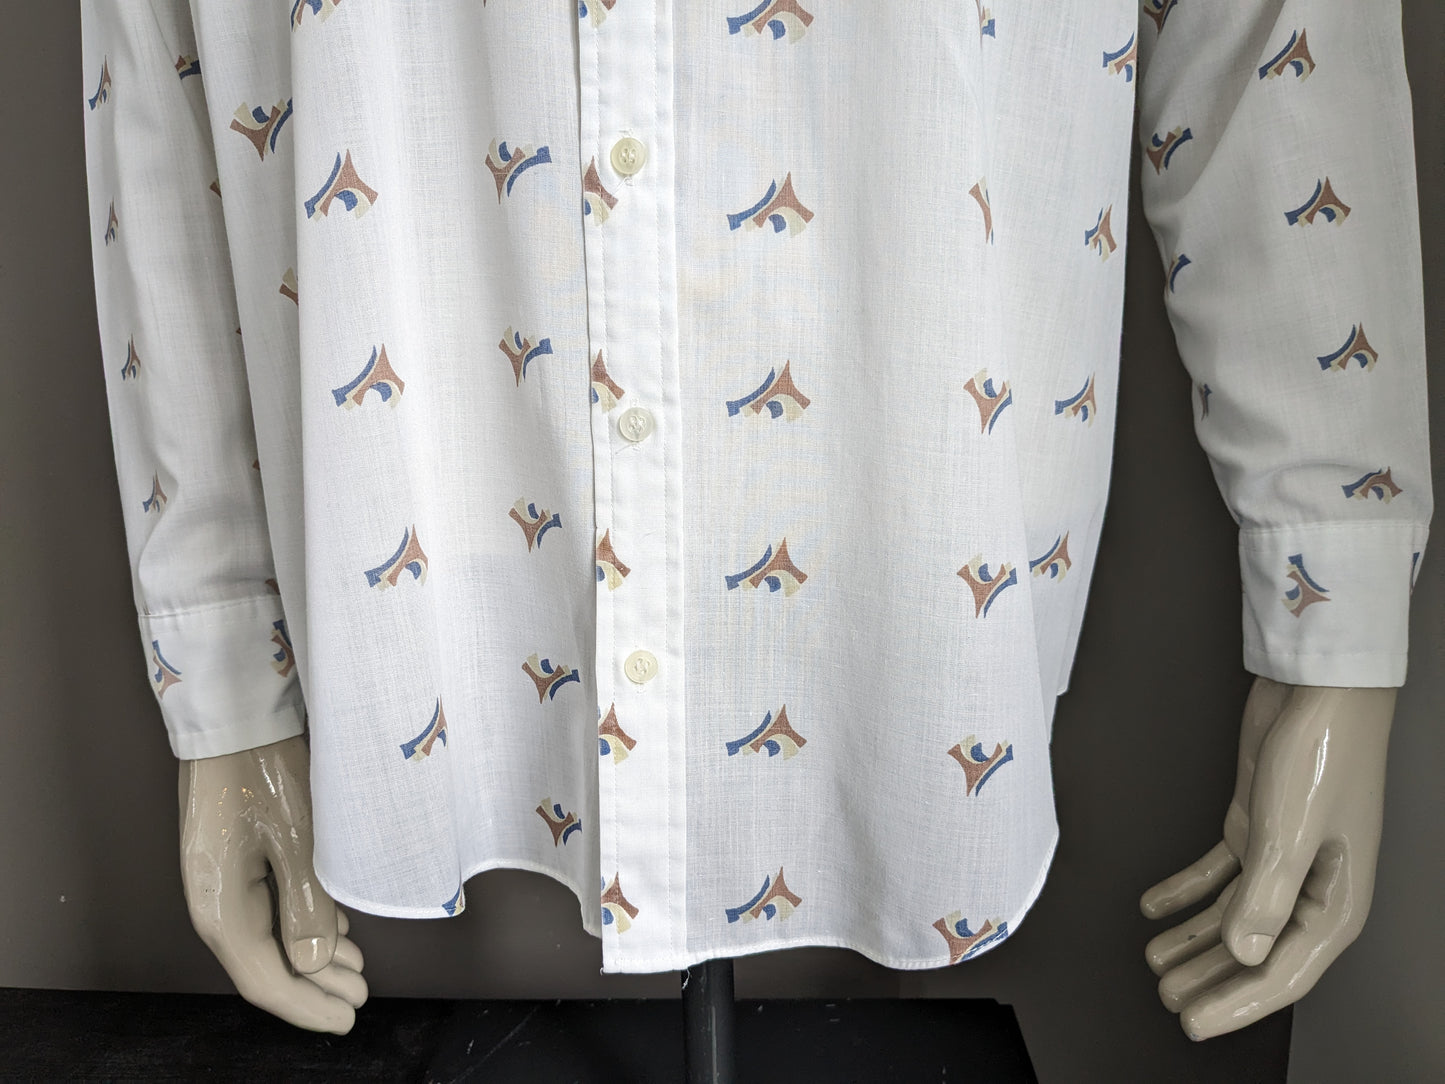 Shirt de Pickwick des années 70 vintage avec collier. Impression en bleu marron blanc. Taille 2xl / xxl.